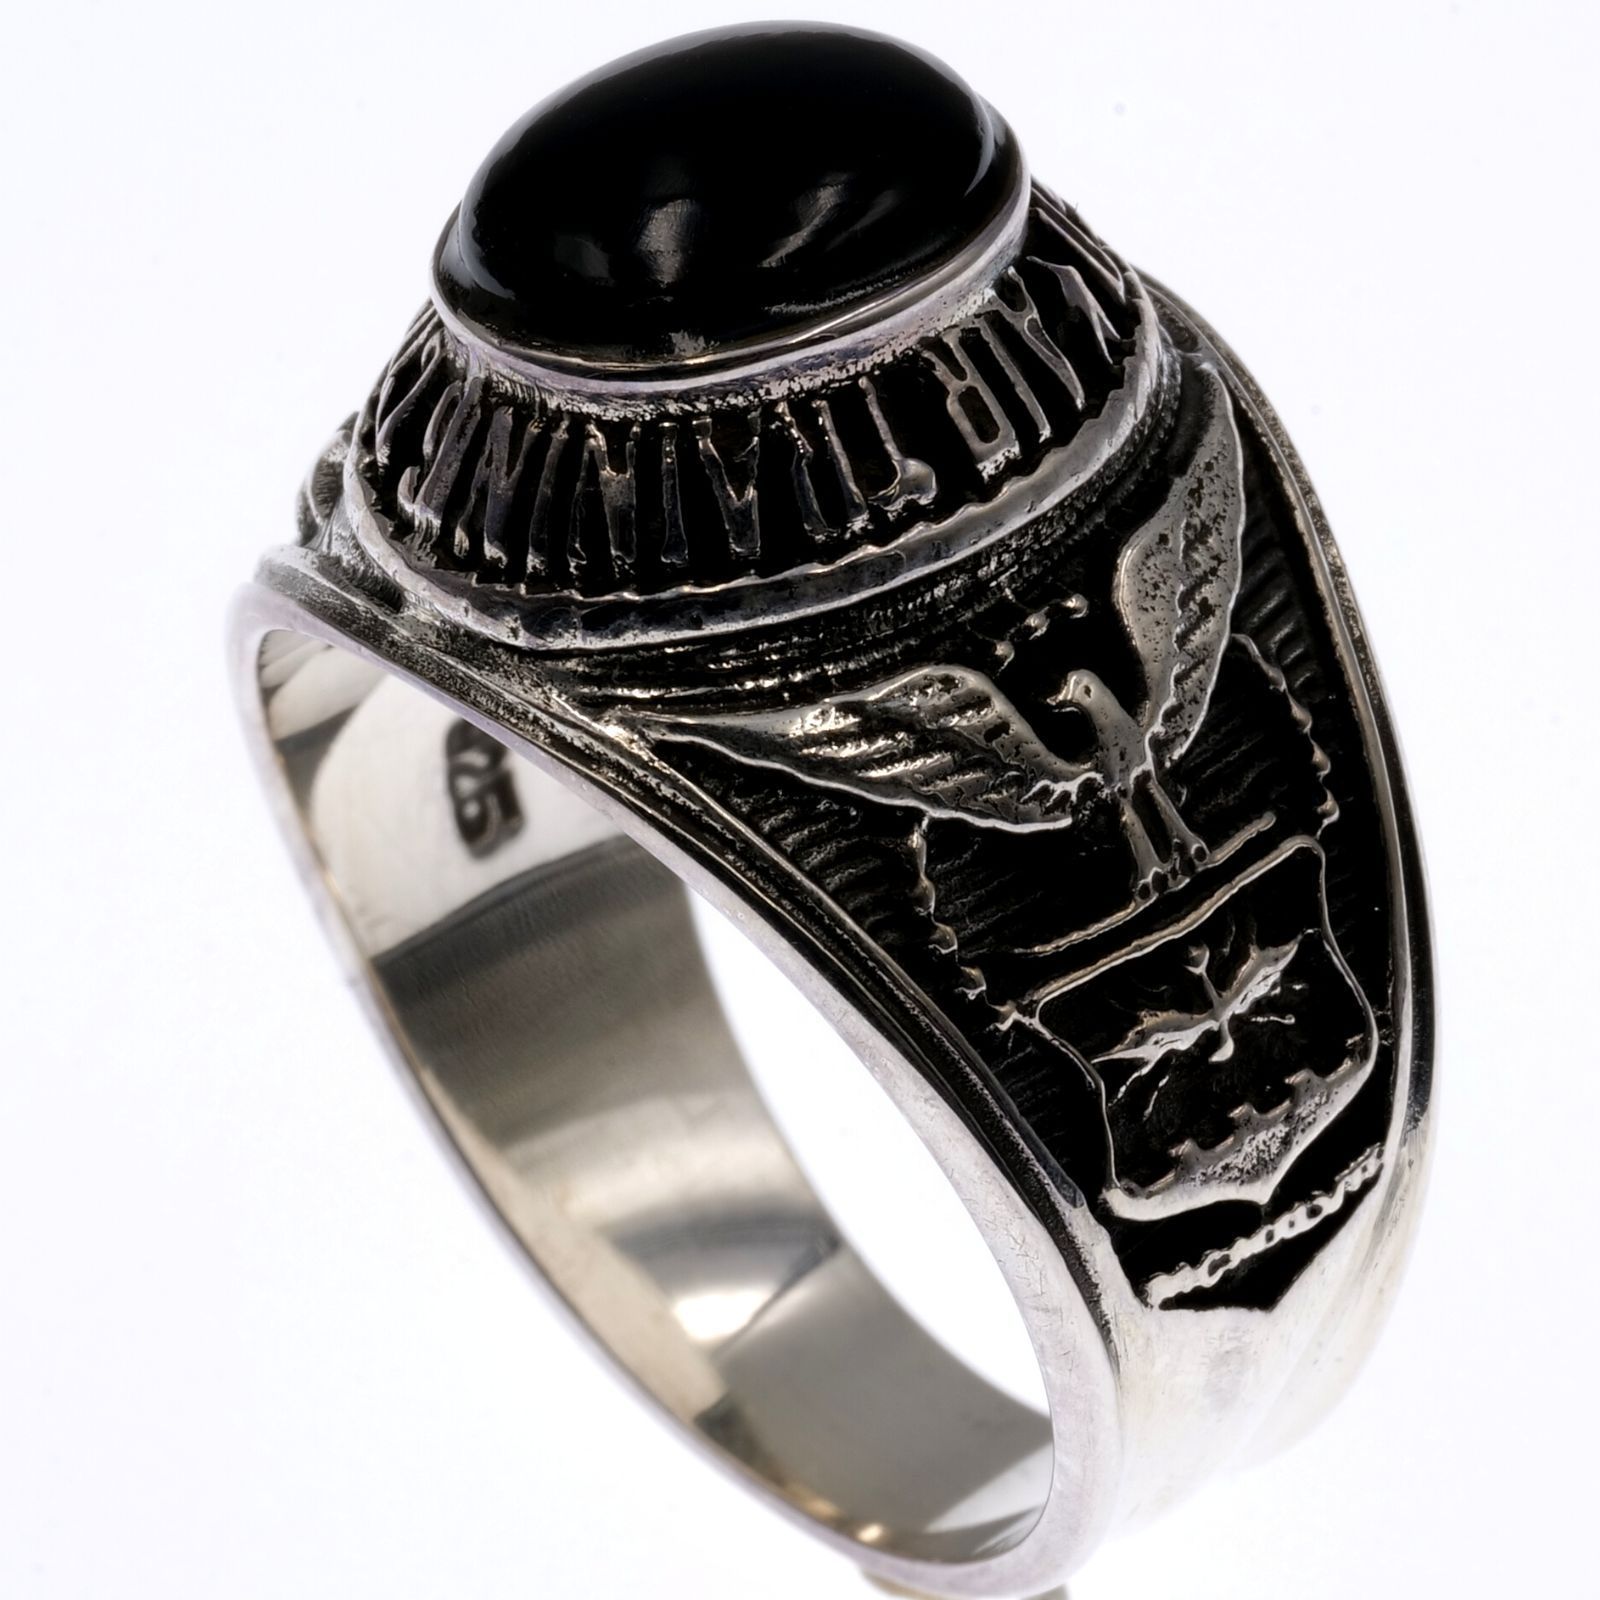 ブラックオニキス silver925 カレッジリング オーバル 指輪 メンズ 通販